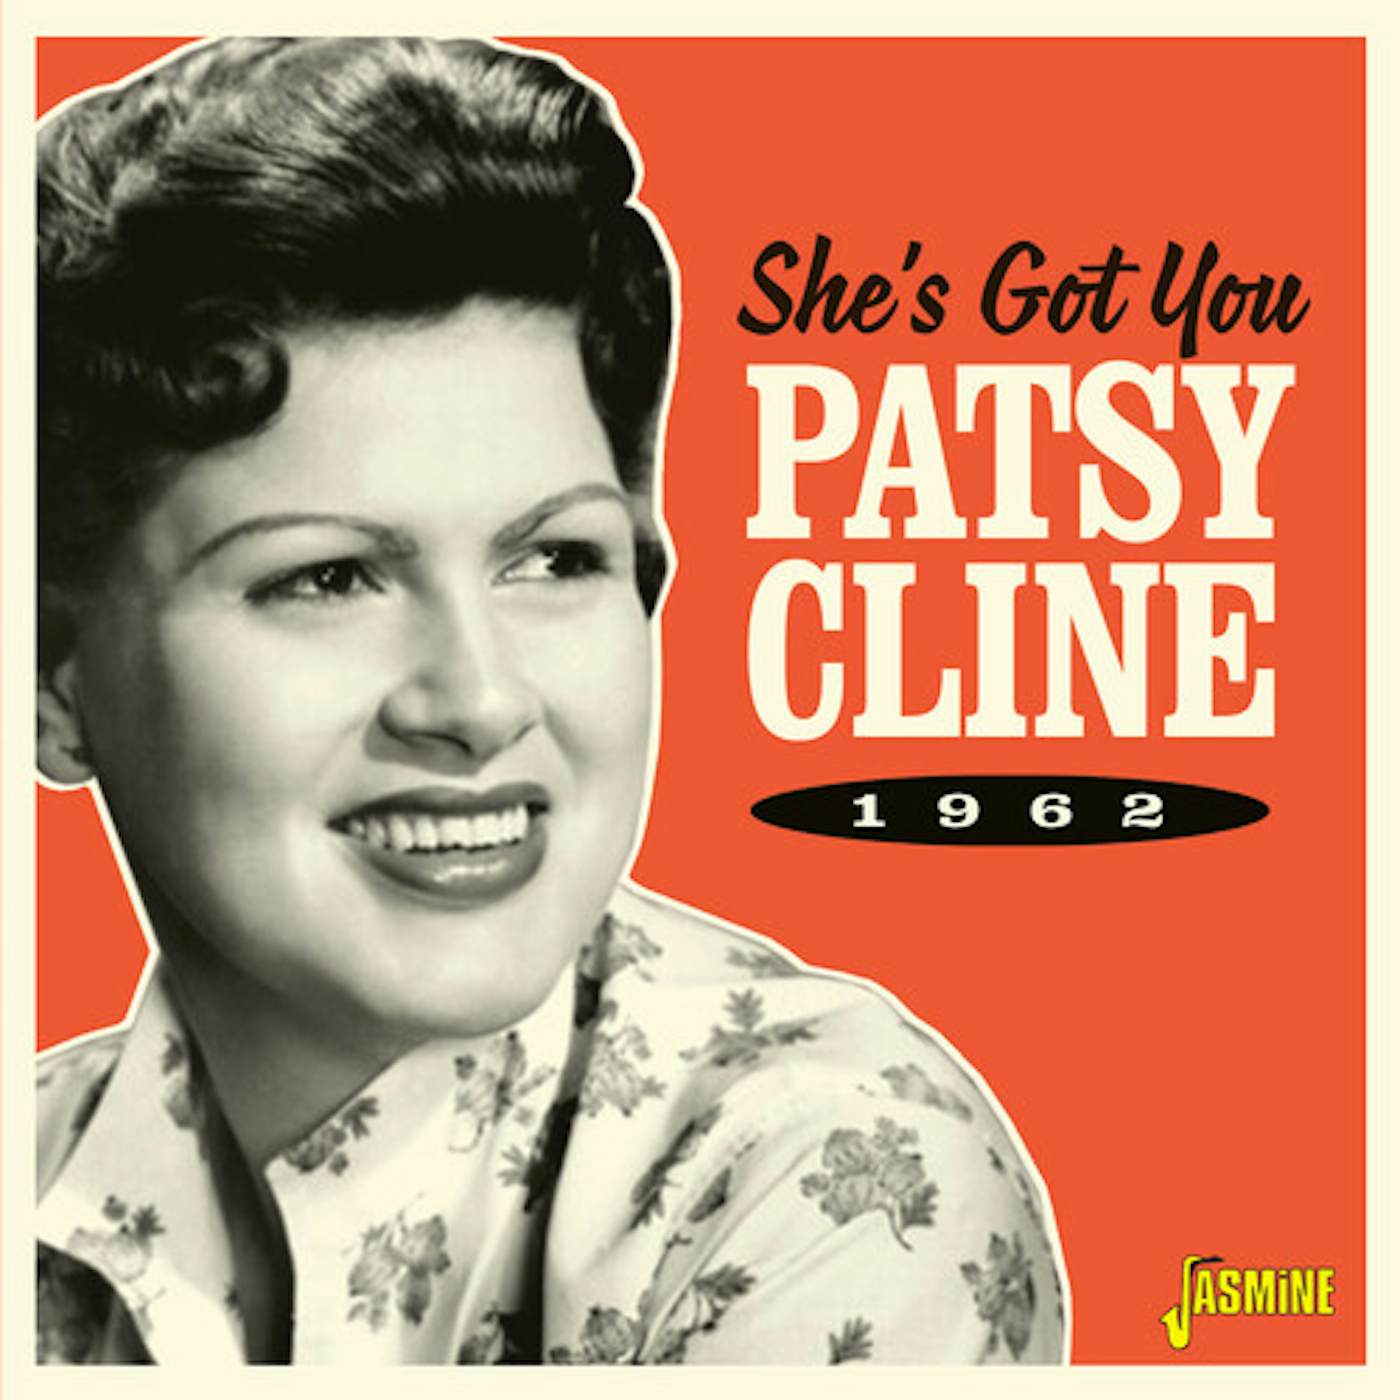 Patsy Cline SHE'S GOT YOU-1962 CD